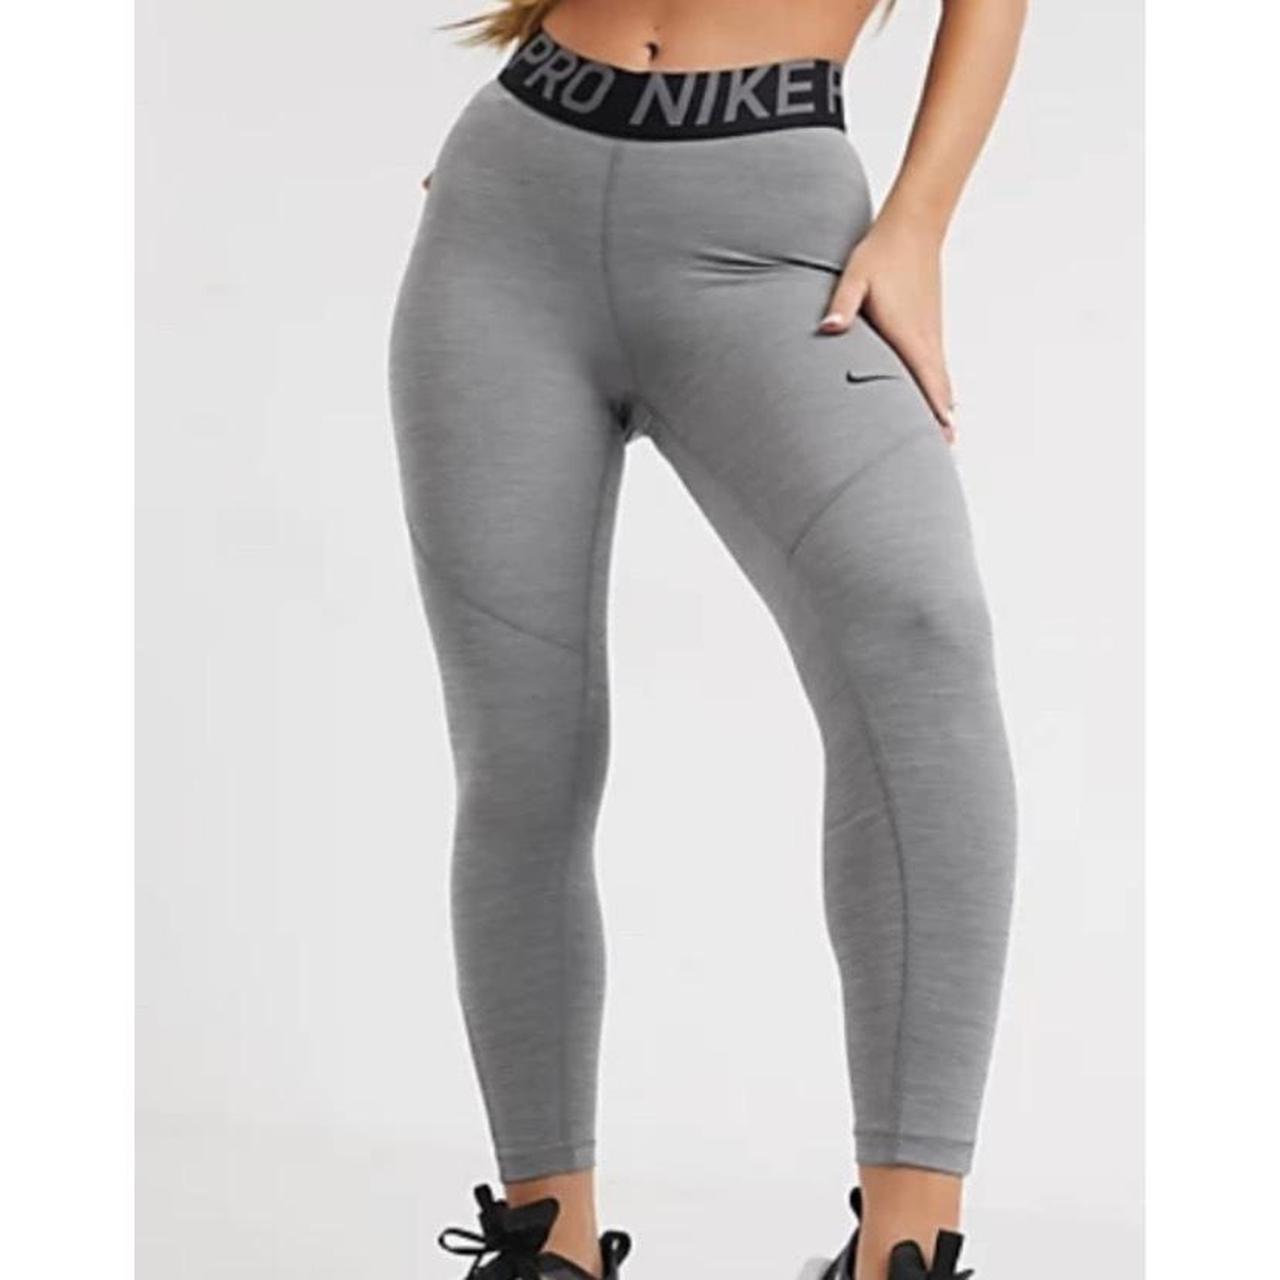 Grey Nike pro leggings in size xs with Nike pro - Depop